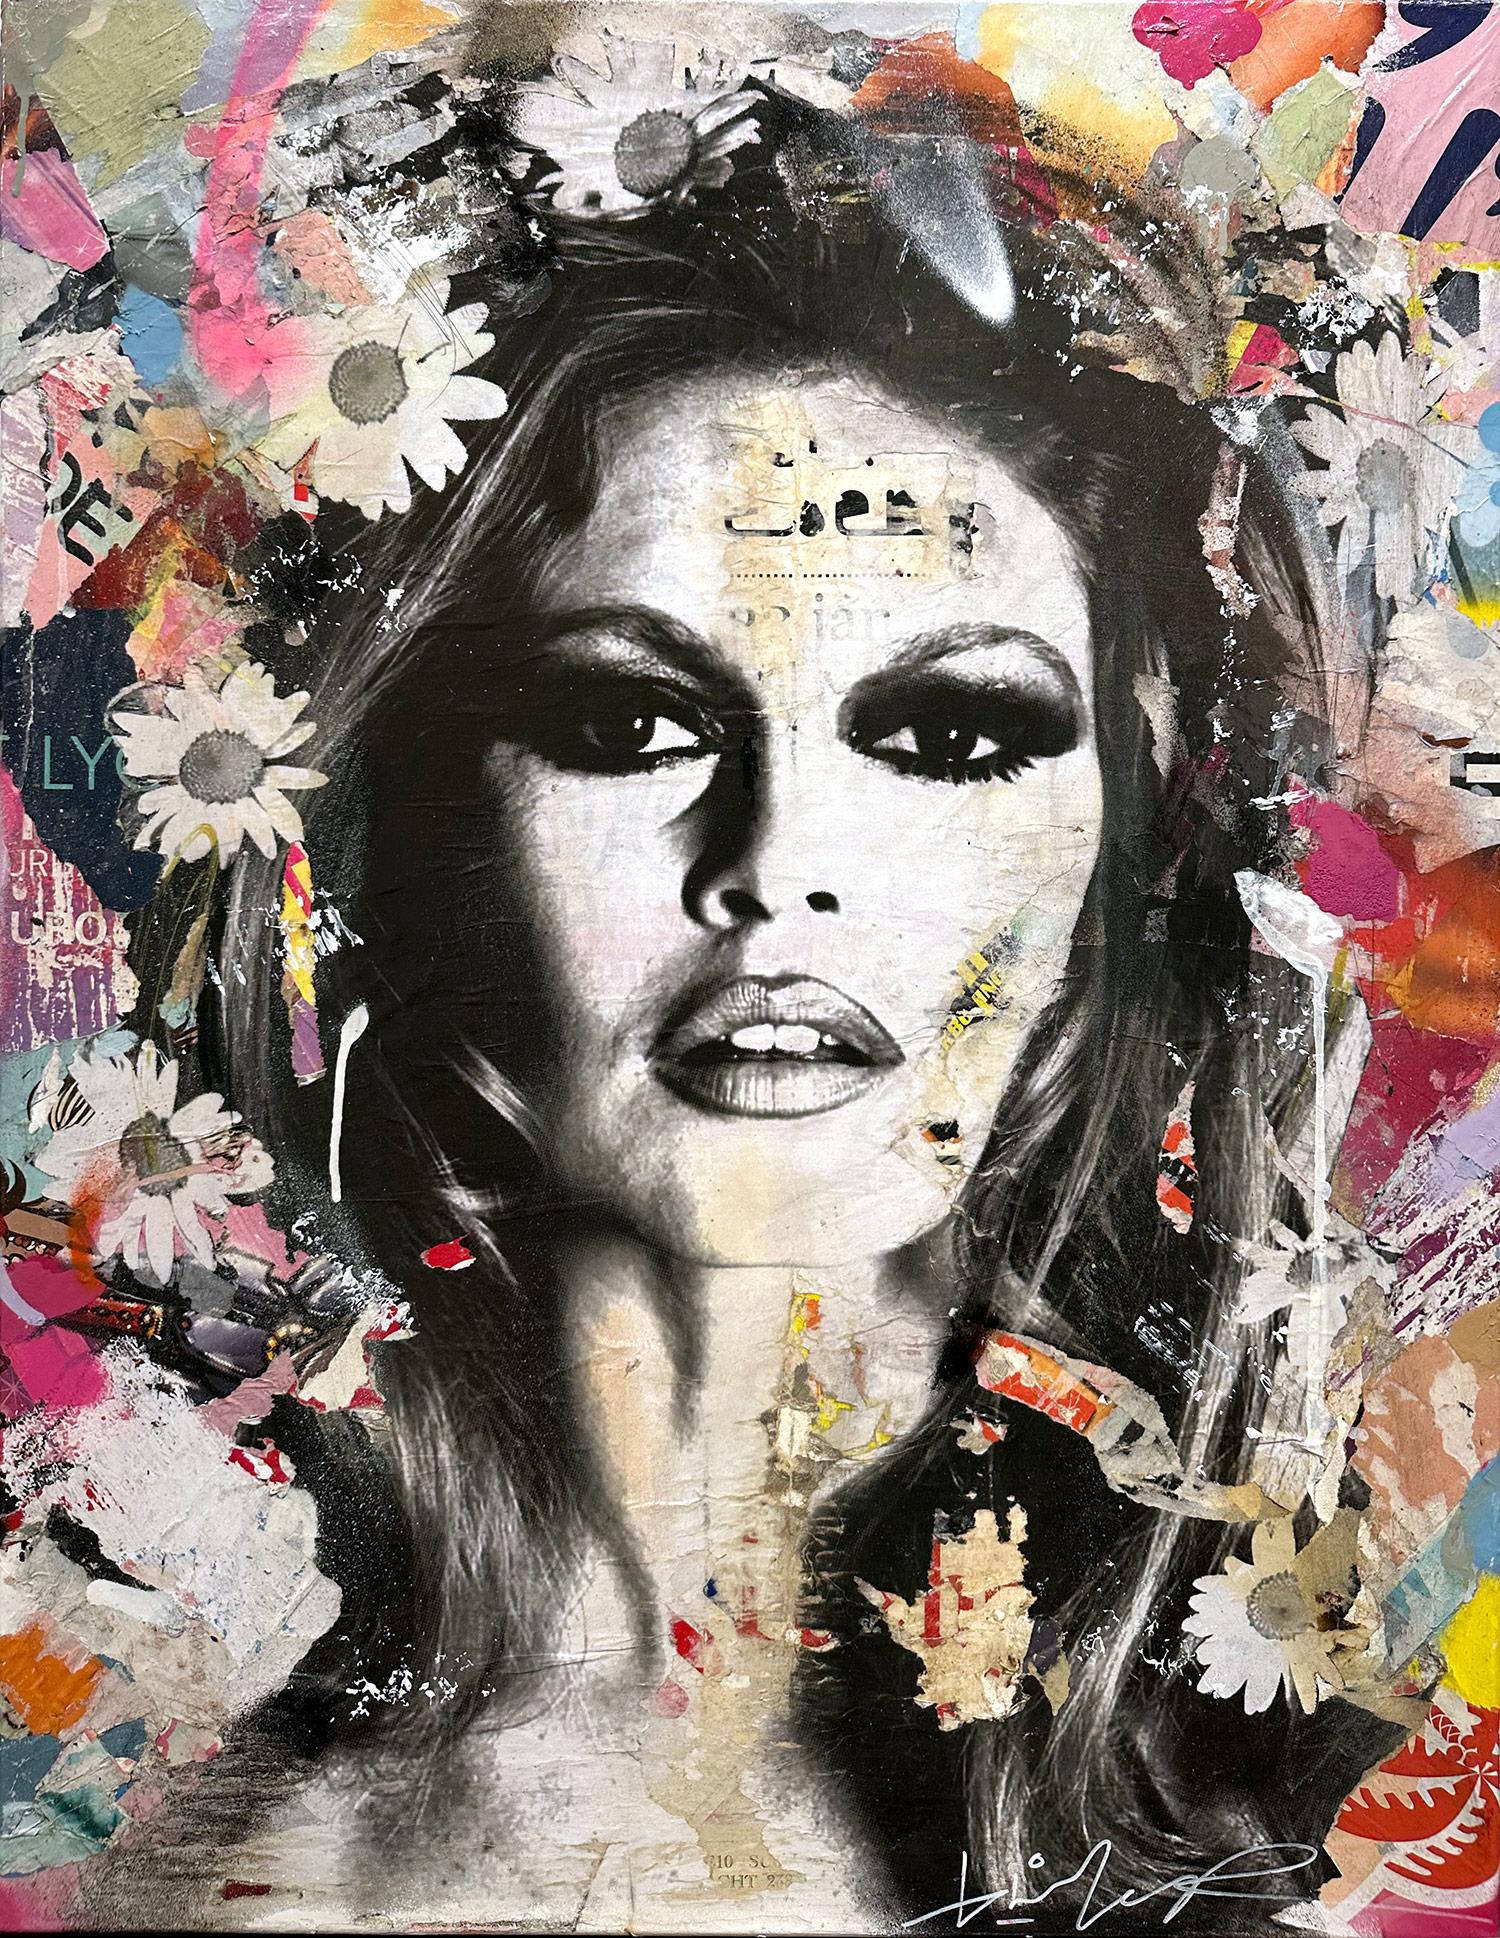 "She’s Your Friend" Brigitte Bardot Pop Art Portrait Décollage Painting Canvas